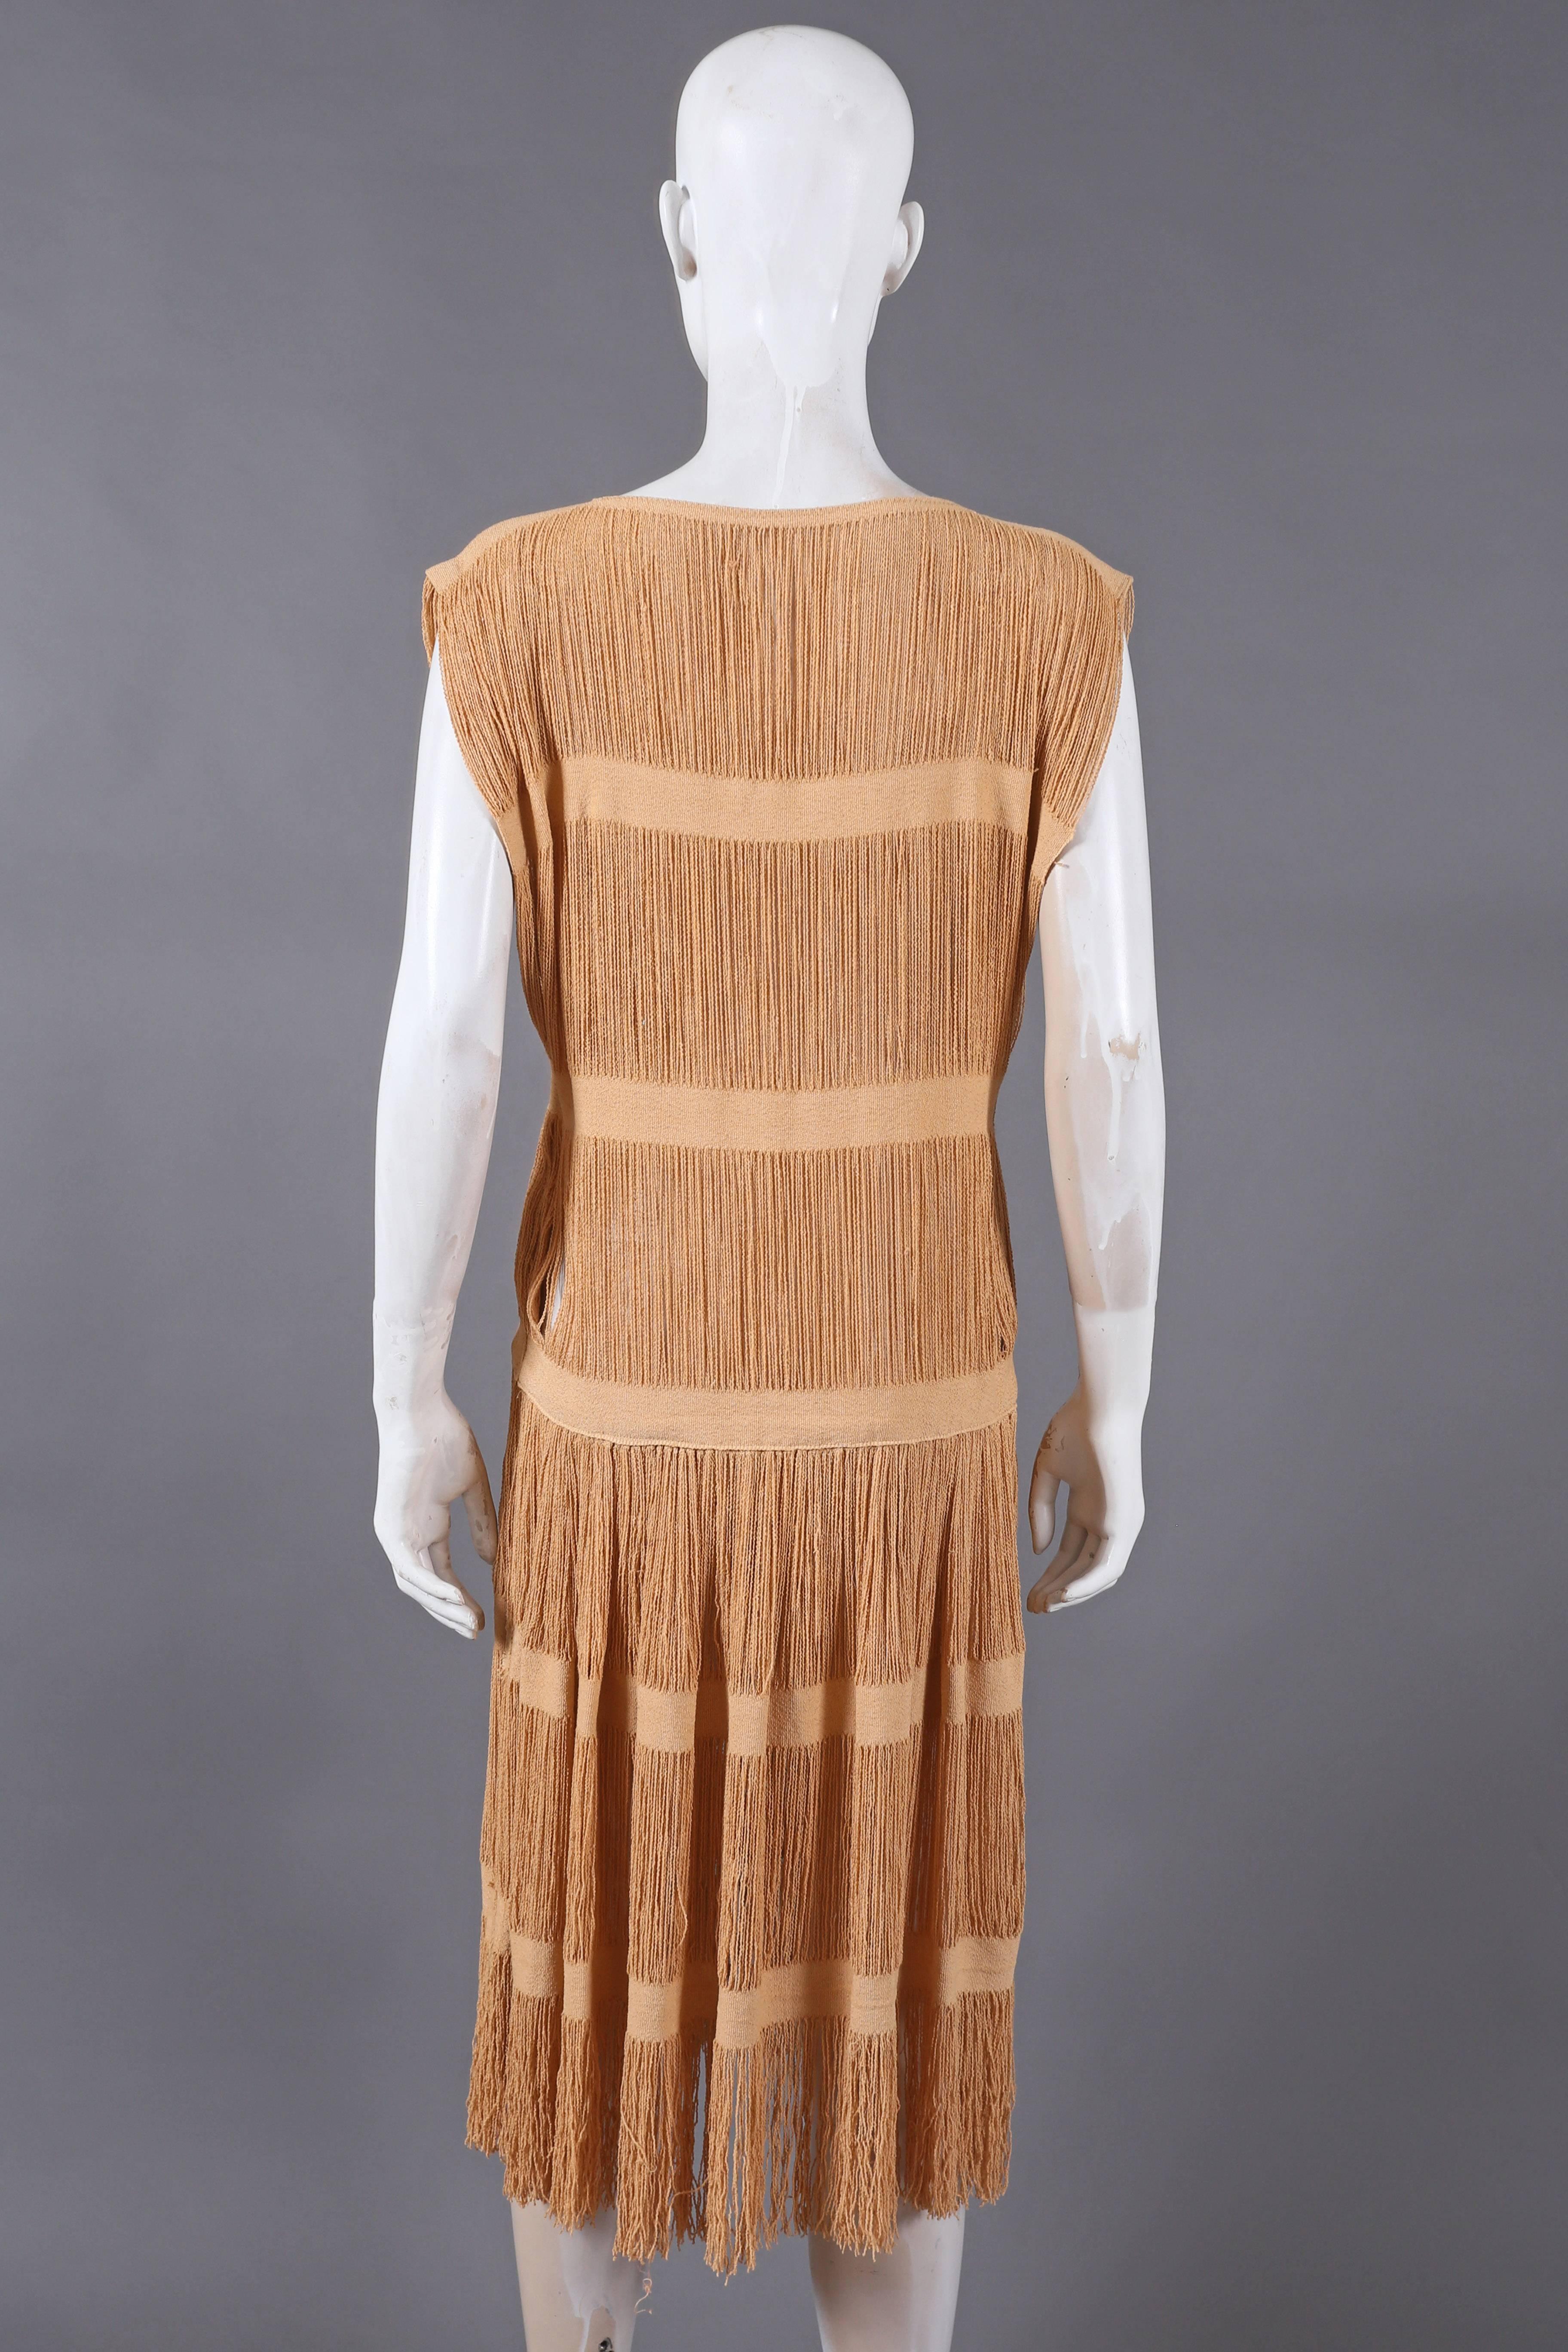 Women's fringed panelled linen flapper dress, c. 1920s